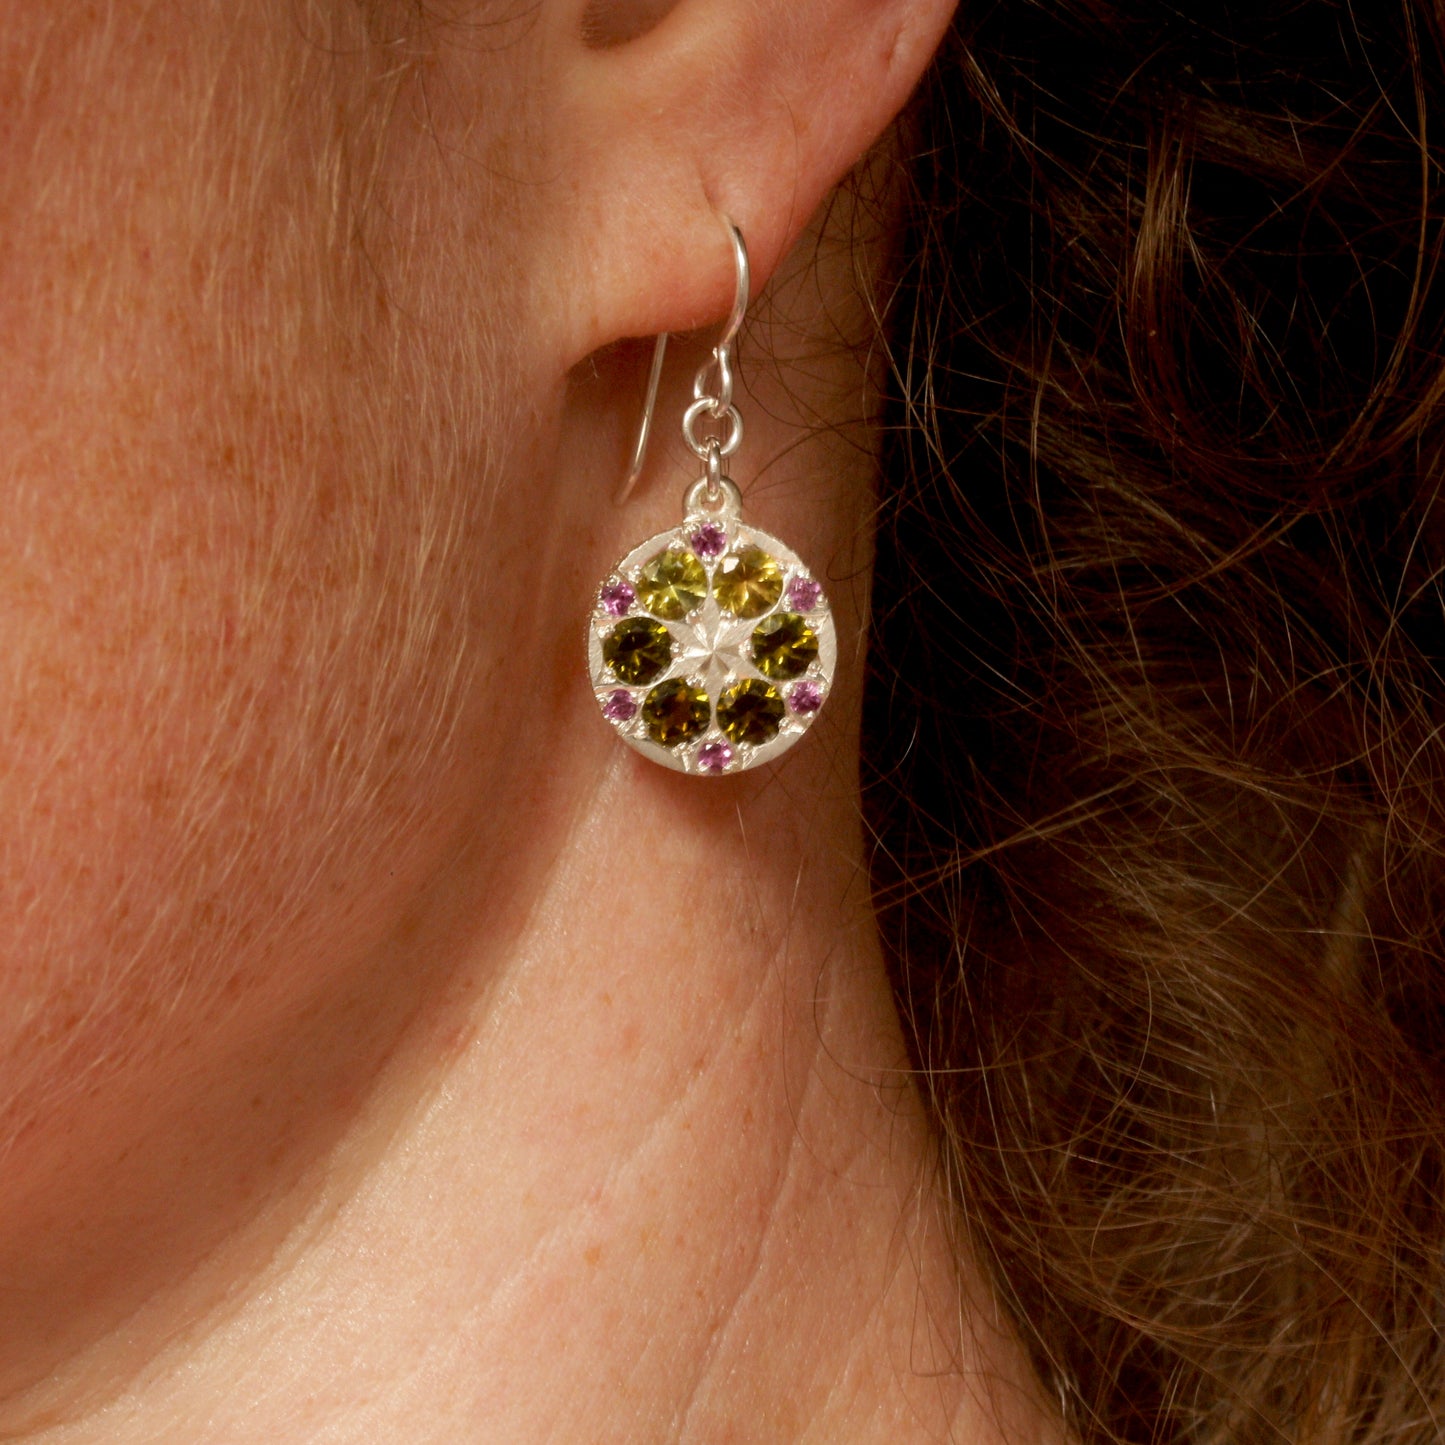 Forest kaleidoscope earrings